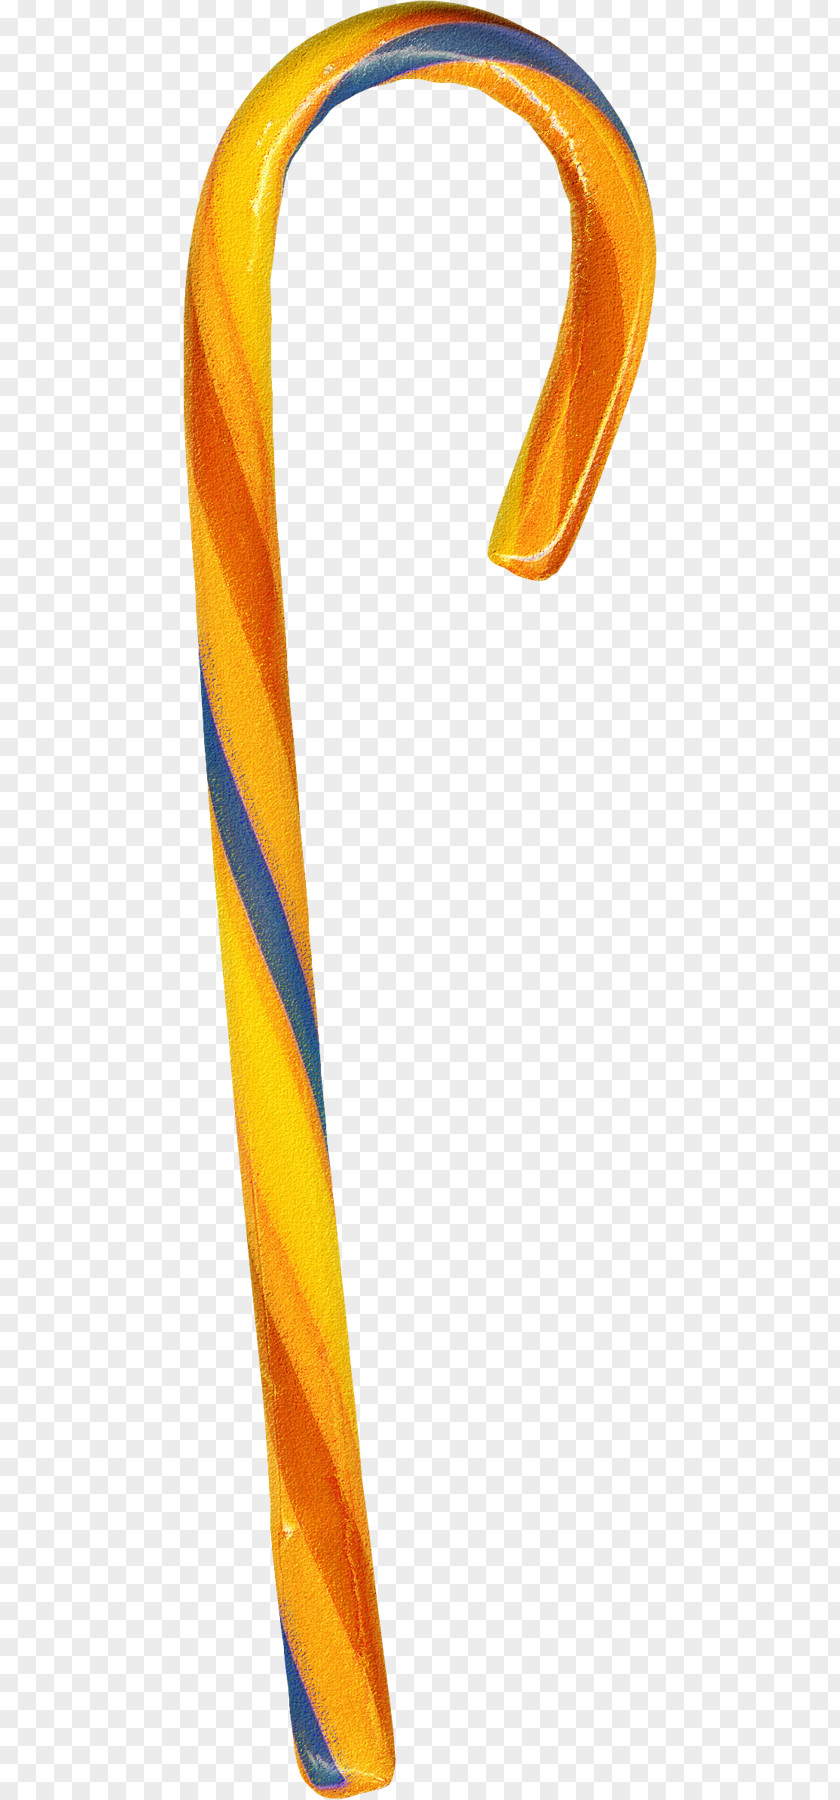 Orange Crutches Candy Cane Stick Lollipop Crutch PNG